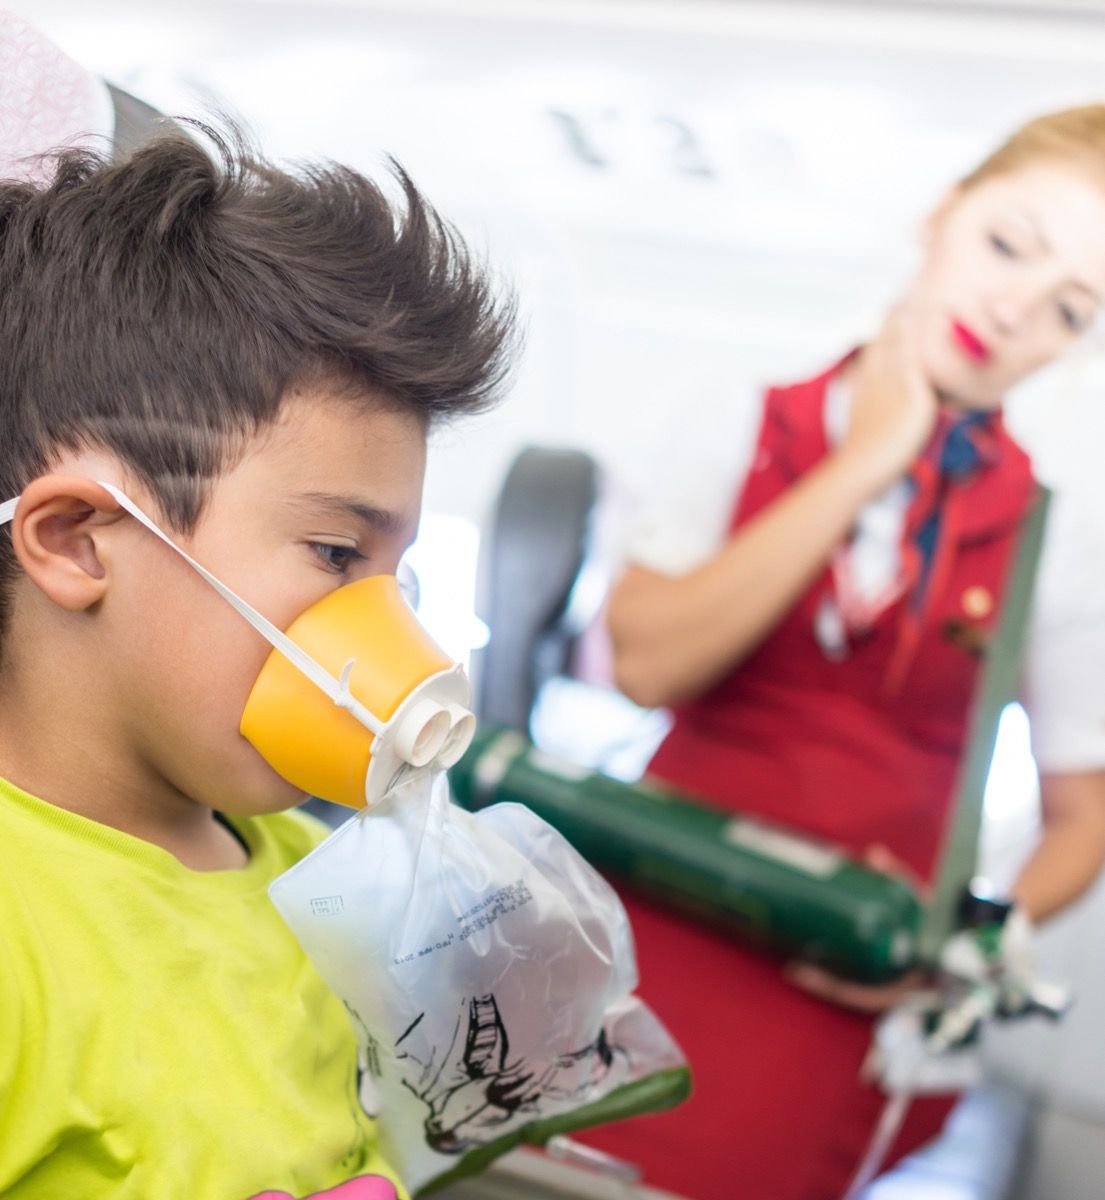 αγόρι στο κάθισμα του αεροπλάνου με μάσκα οξυγόνου καθώς φαίνεται αεροσυνοδός, ενοχλημένος αεροσυνοδός